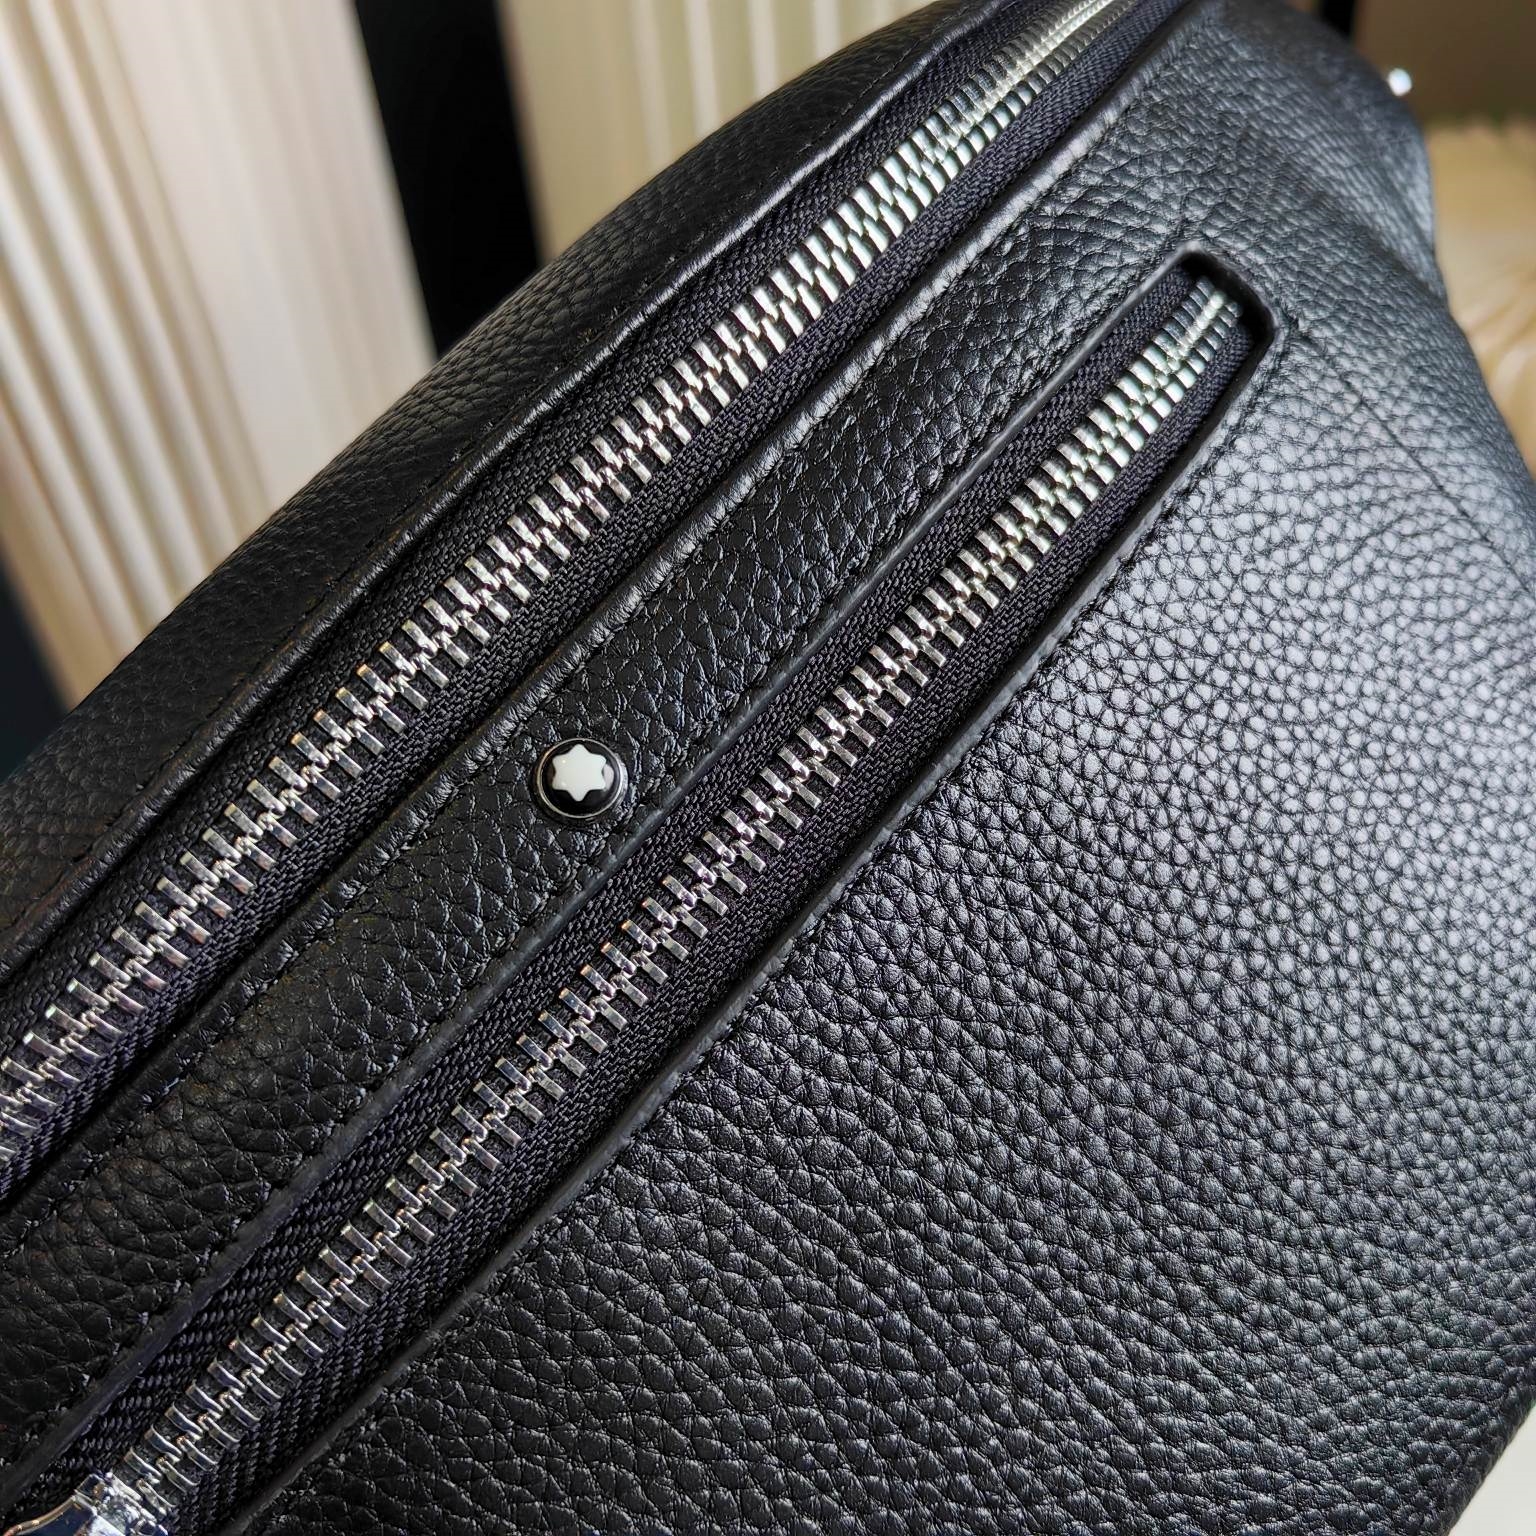 P140 고품질 세련된 남성 허리 팩 검은 가슴 가방, 원래 단일 가죽 재료, 최고 하드웨어 액세서리, 크기 : 35x17x7